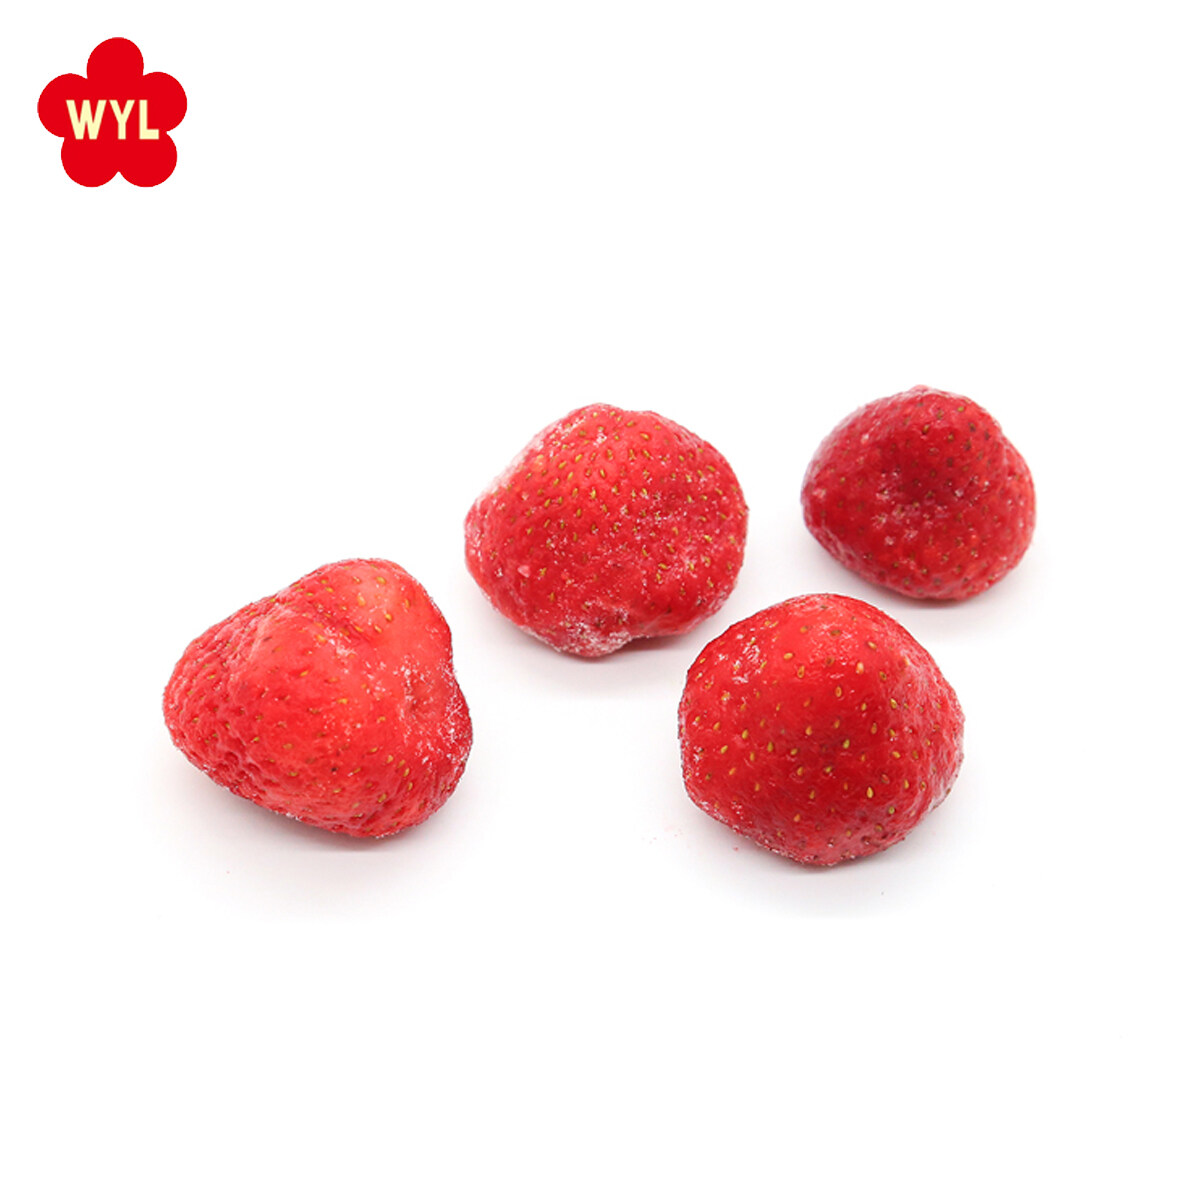 Custom gefrorene Honig -Erdbeere, gefrorene Bio -Erdbeeren, Design süße Erdbeeren gefroren, IQF Frozen Strawberri Hersteller, gefrorene Erdungspflichtenfabrik